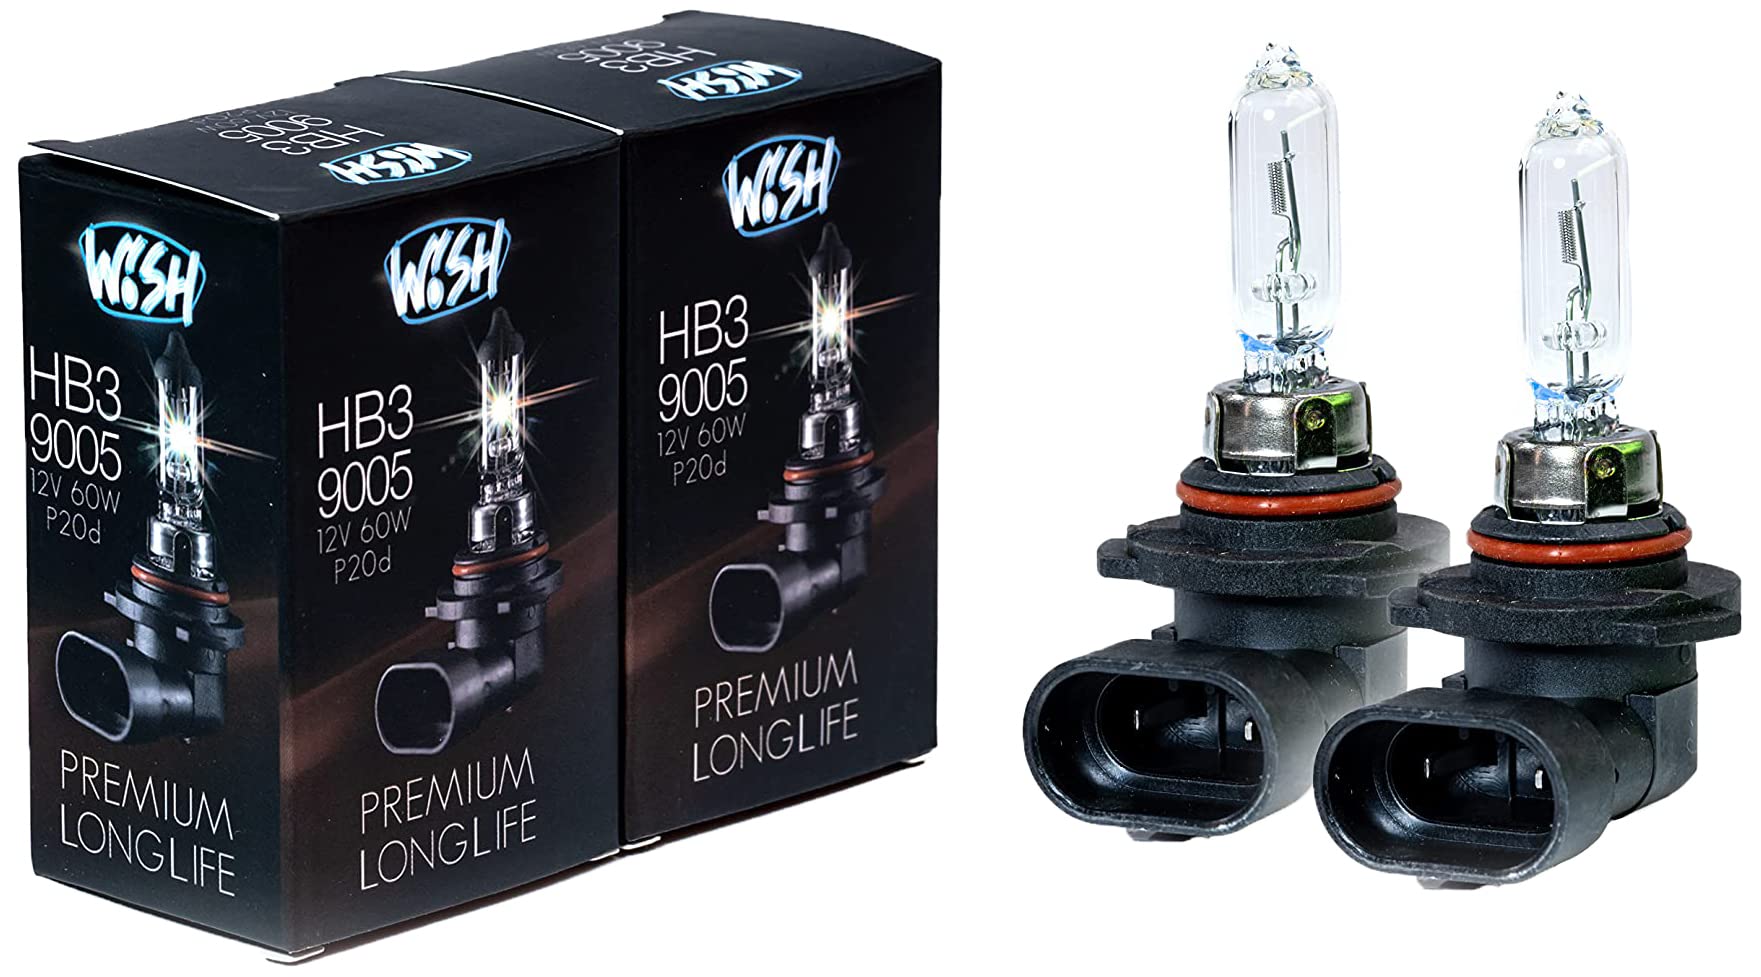 Wish® HB3 9005 LongLife 12V 60W P20d Halogen Glühbirnen Lampen Scheinwerferlampen (HB3 LongLife Doppelpack) von Wish